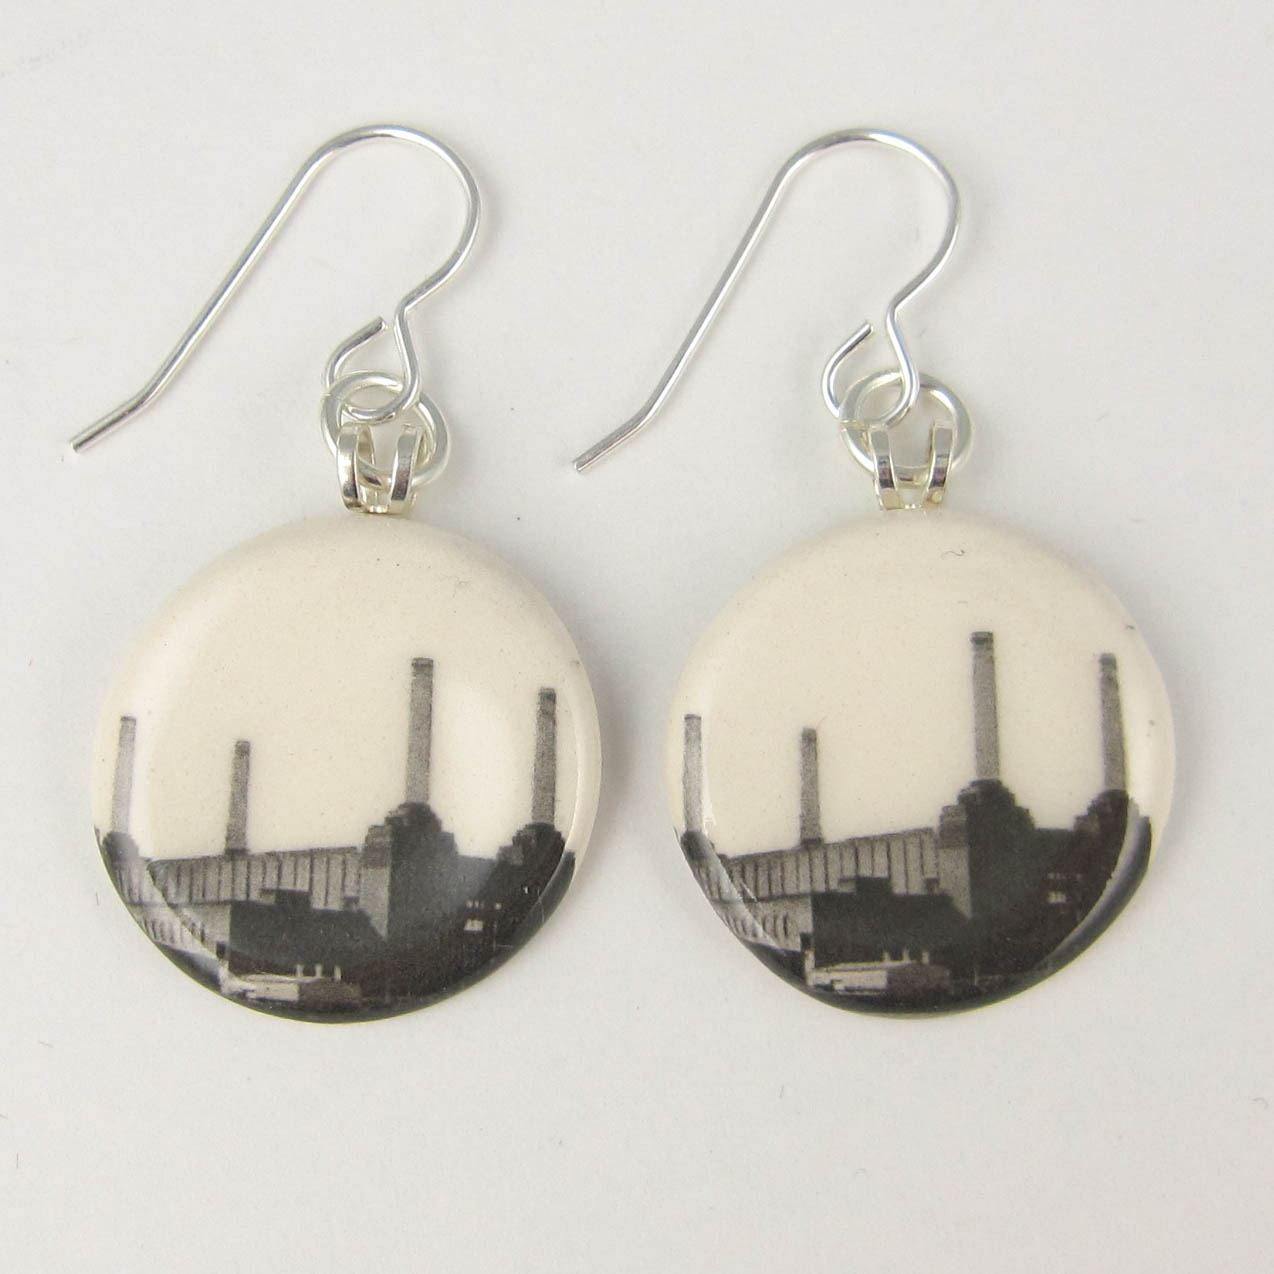 View London Battersea Power Station earrings